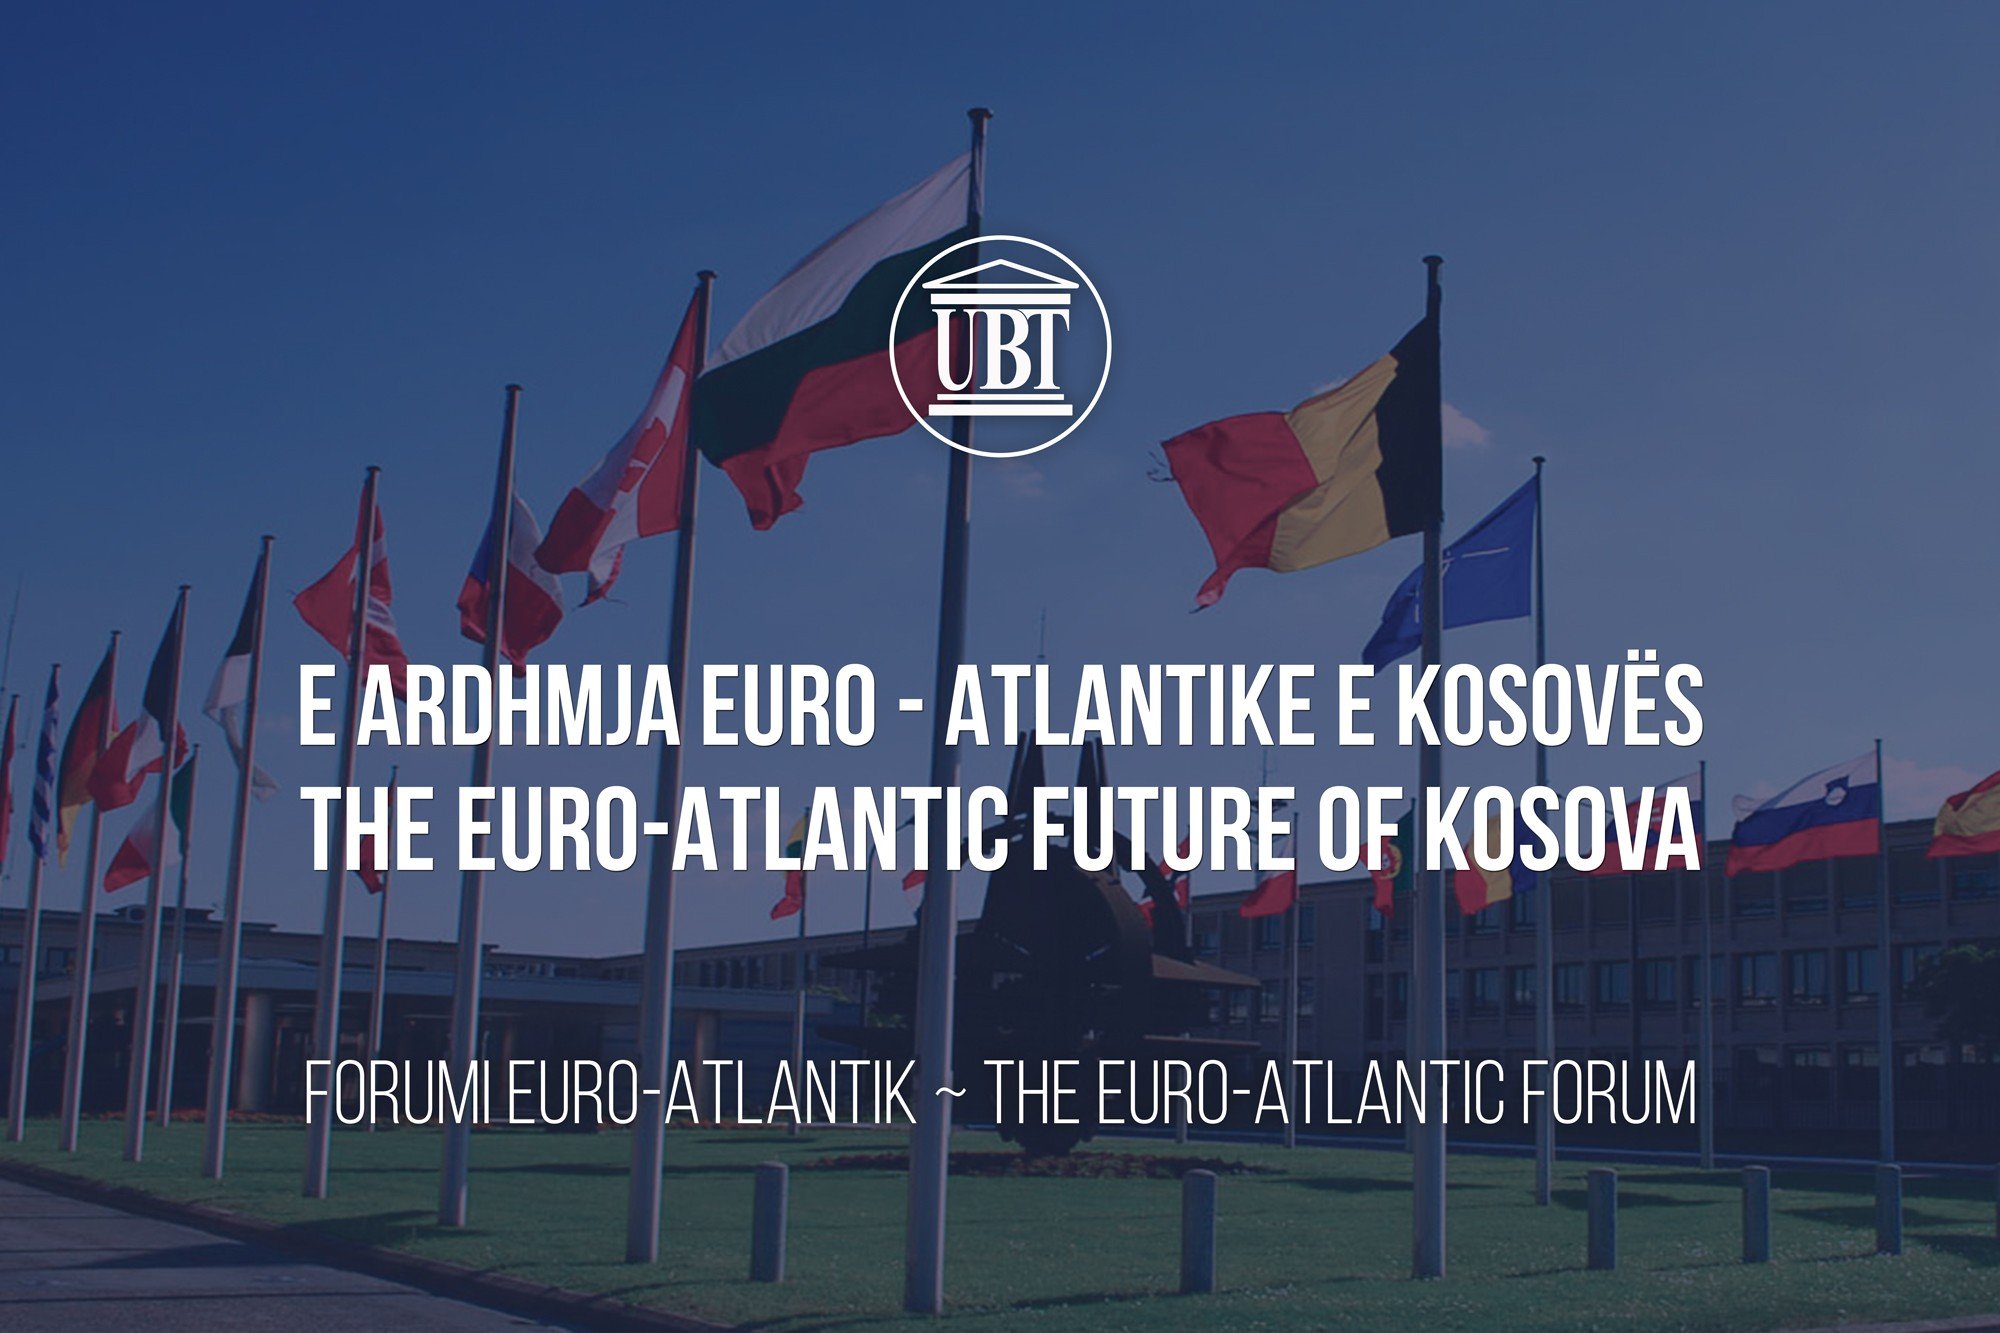 Nesër  më 24 tetor 2017, mbahet konferenca e UBT-së për të ardhmen Euro-Atlantike të Kosovës, merr pjesë edhe Jamie Shea nga NATO